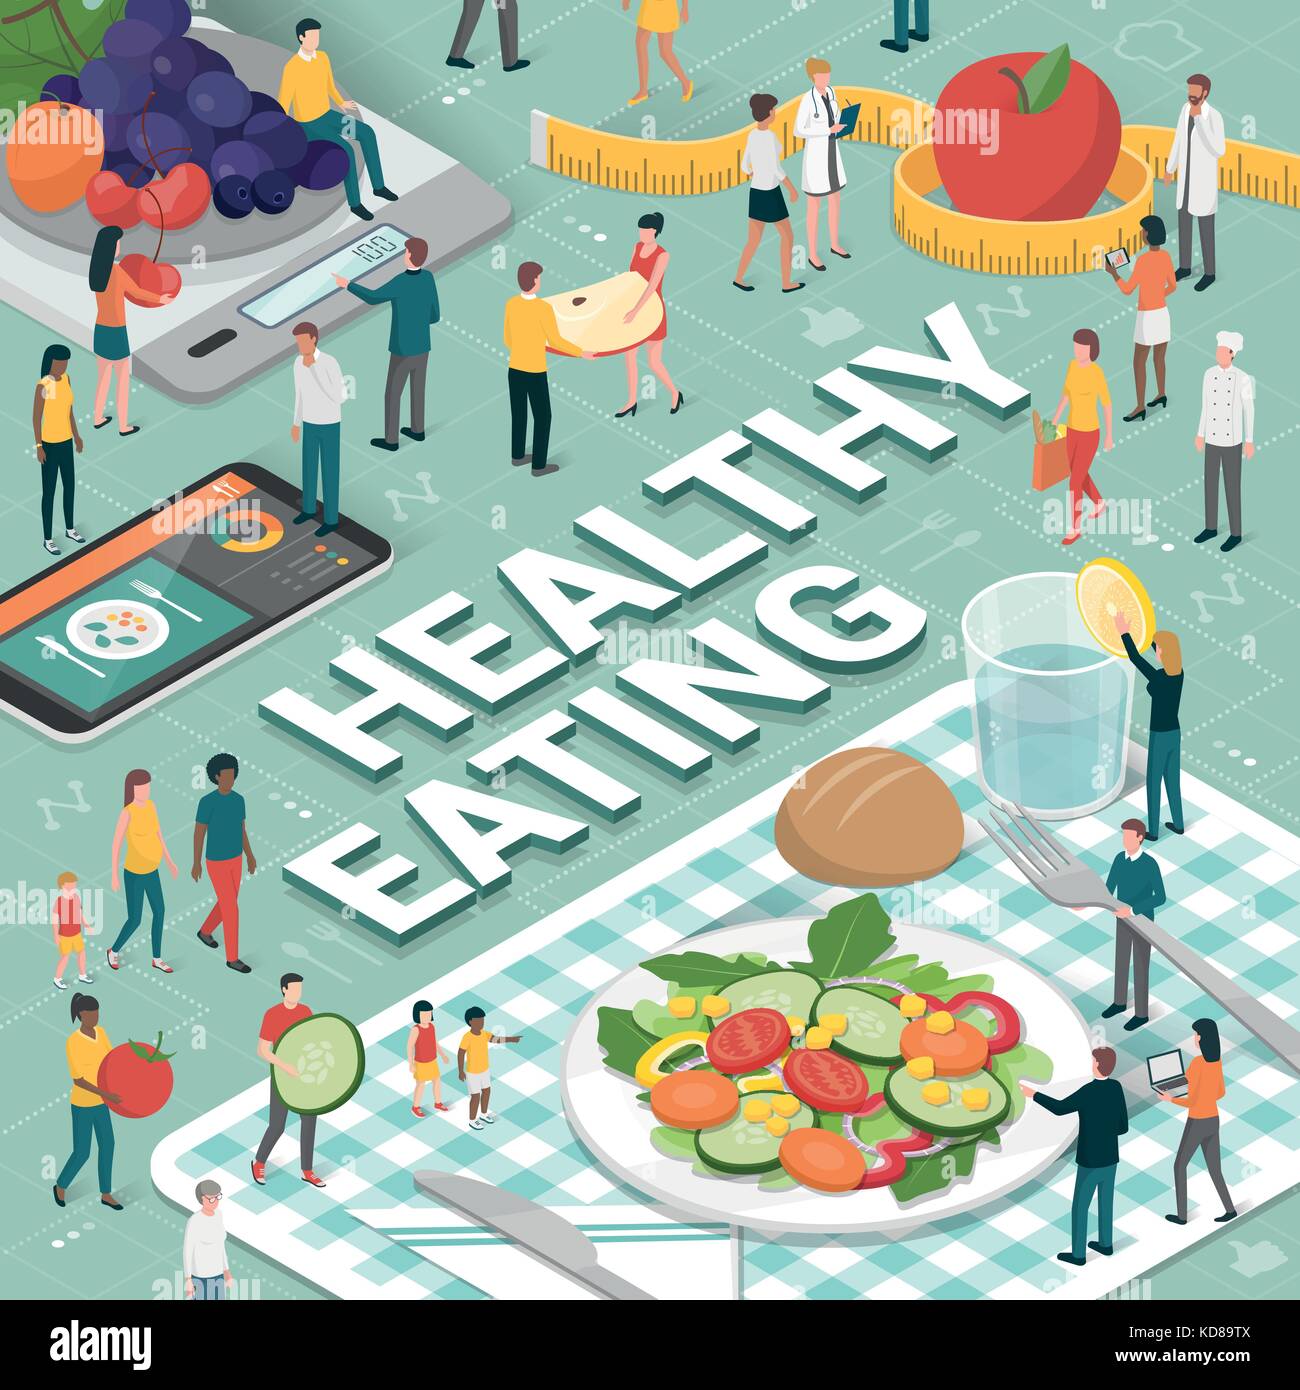 Gesunde Ernährung, Diät und Ernährung Konzept: Menschen zusammen vorbereiten und gesunde vegane Mahlzeit, Ernährungswissenschaftlern und Essen app Stock Vektor